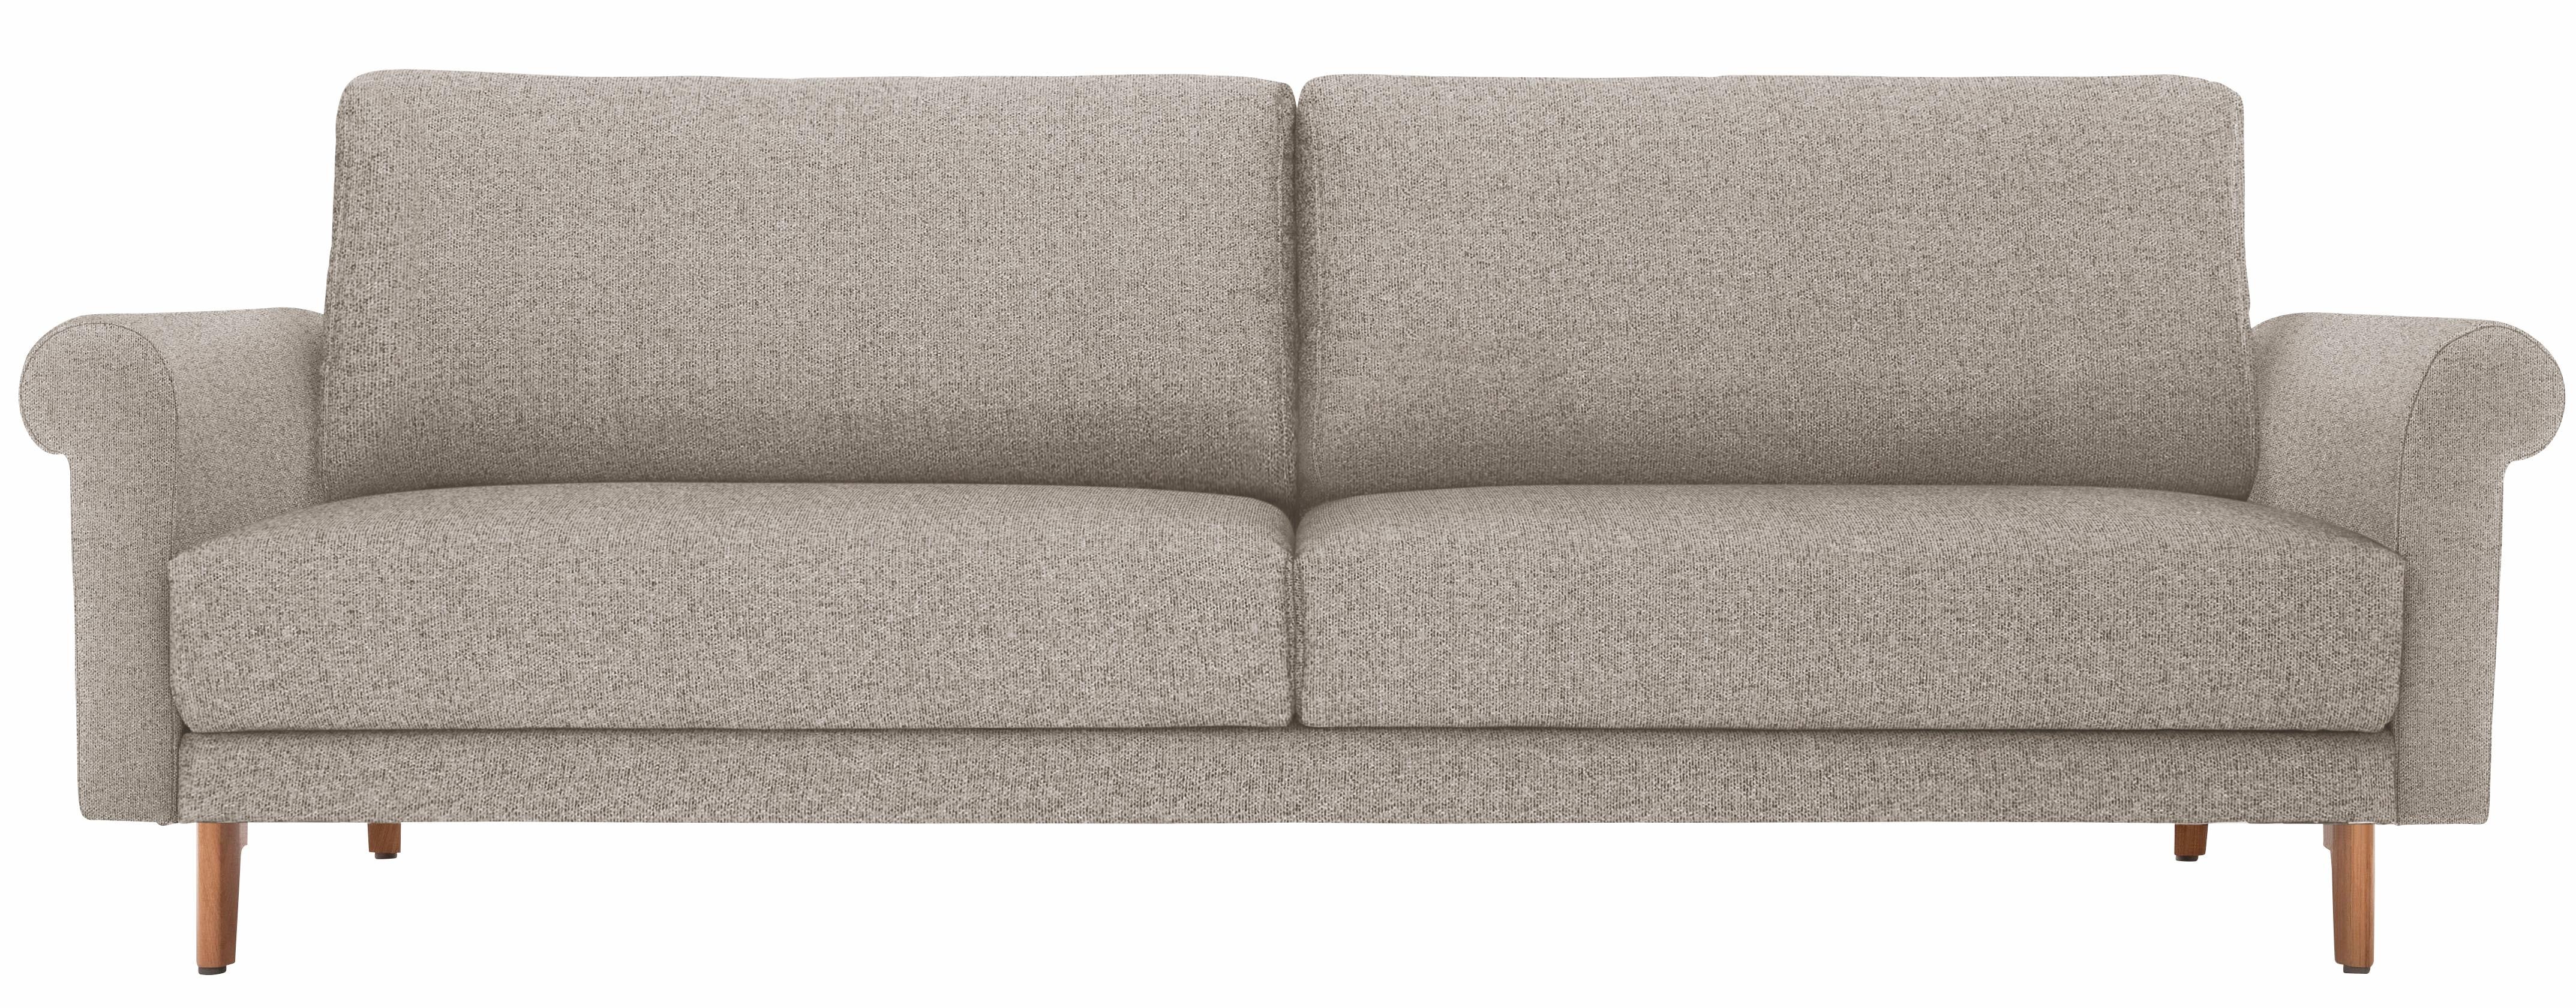 hülsta sofa 3-Sitzer hs.450, Armlehne Schnecke modern Landhaus, Breite 208 cm, Fuß Nussbaum, wahlweise Stoff oder Leder